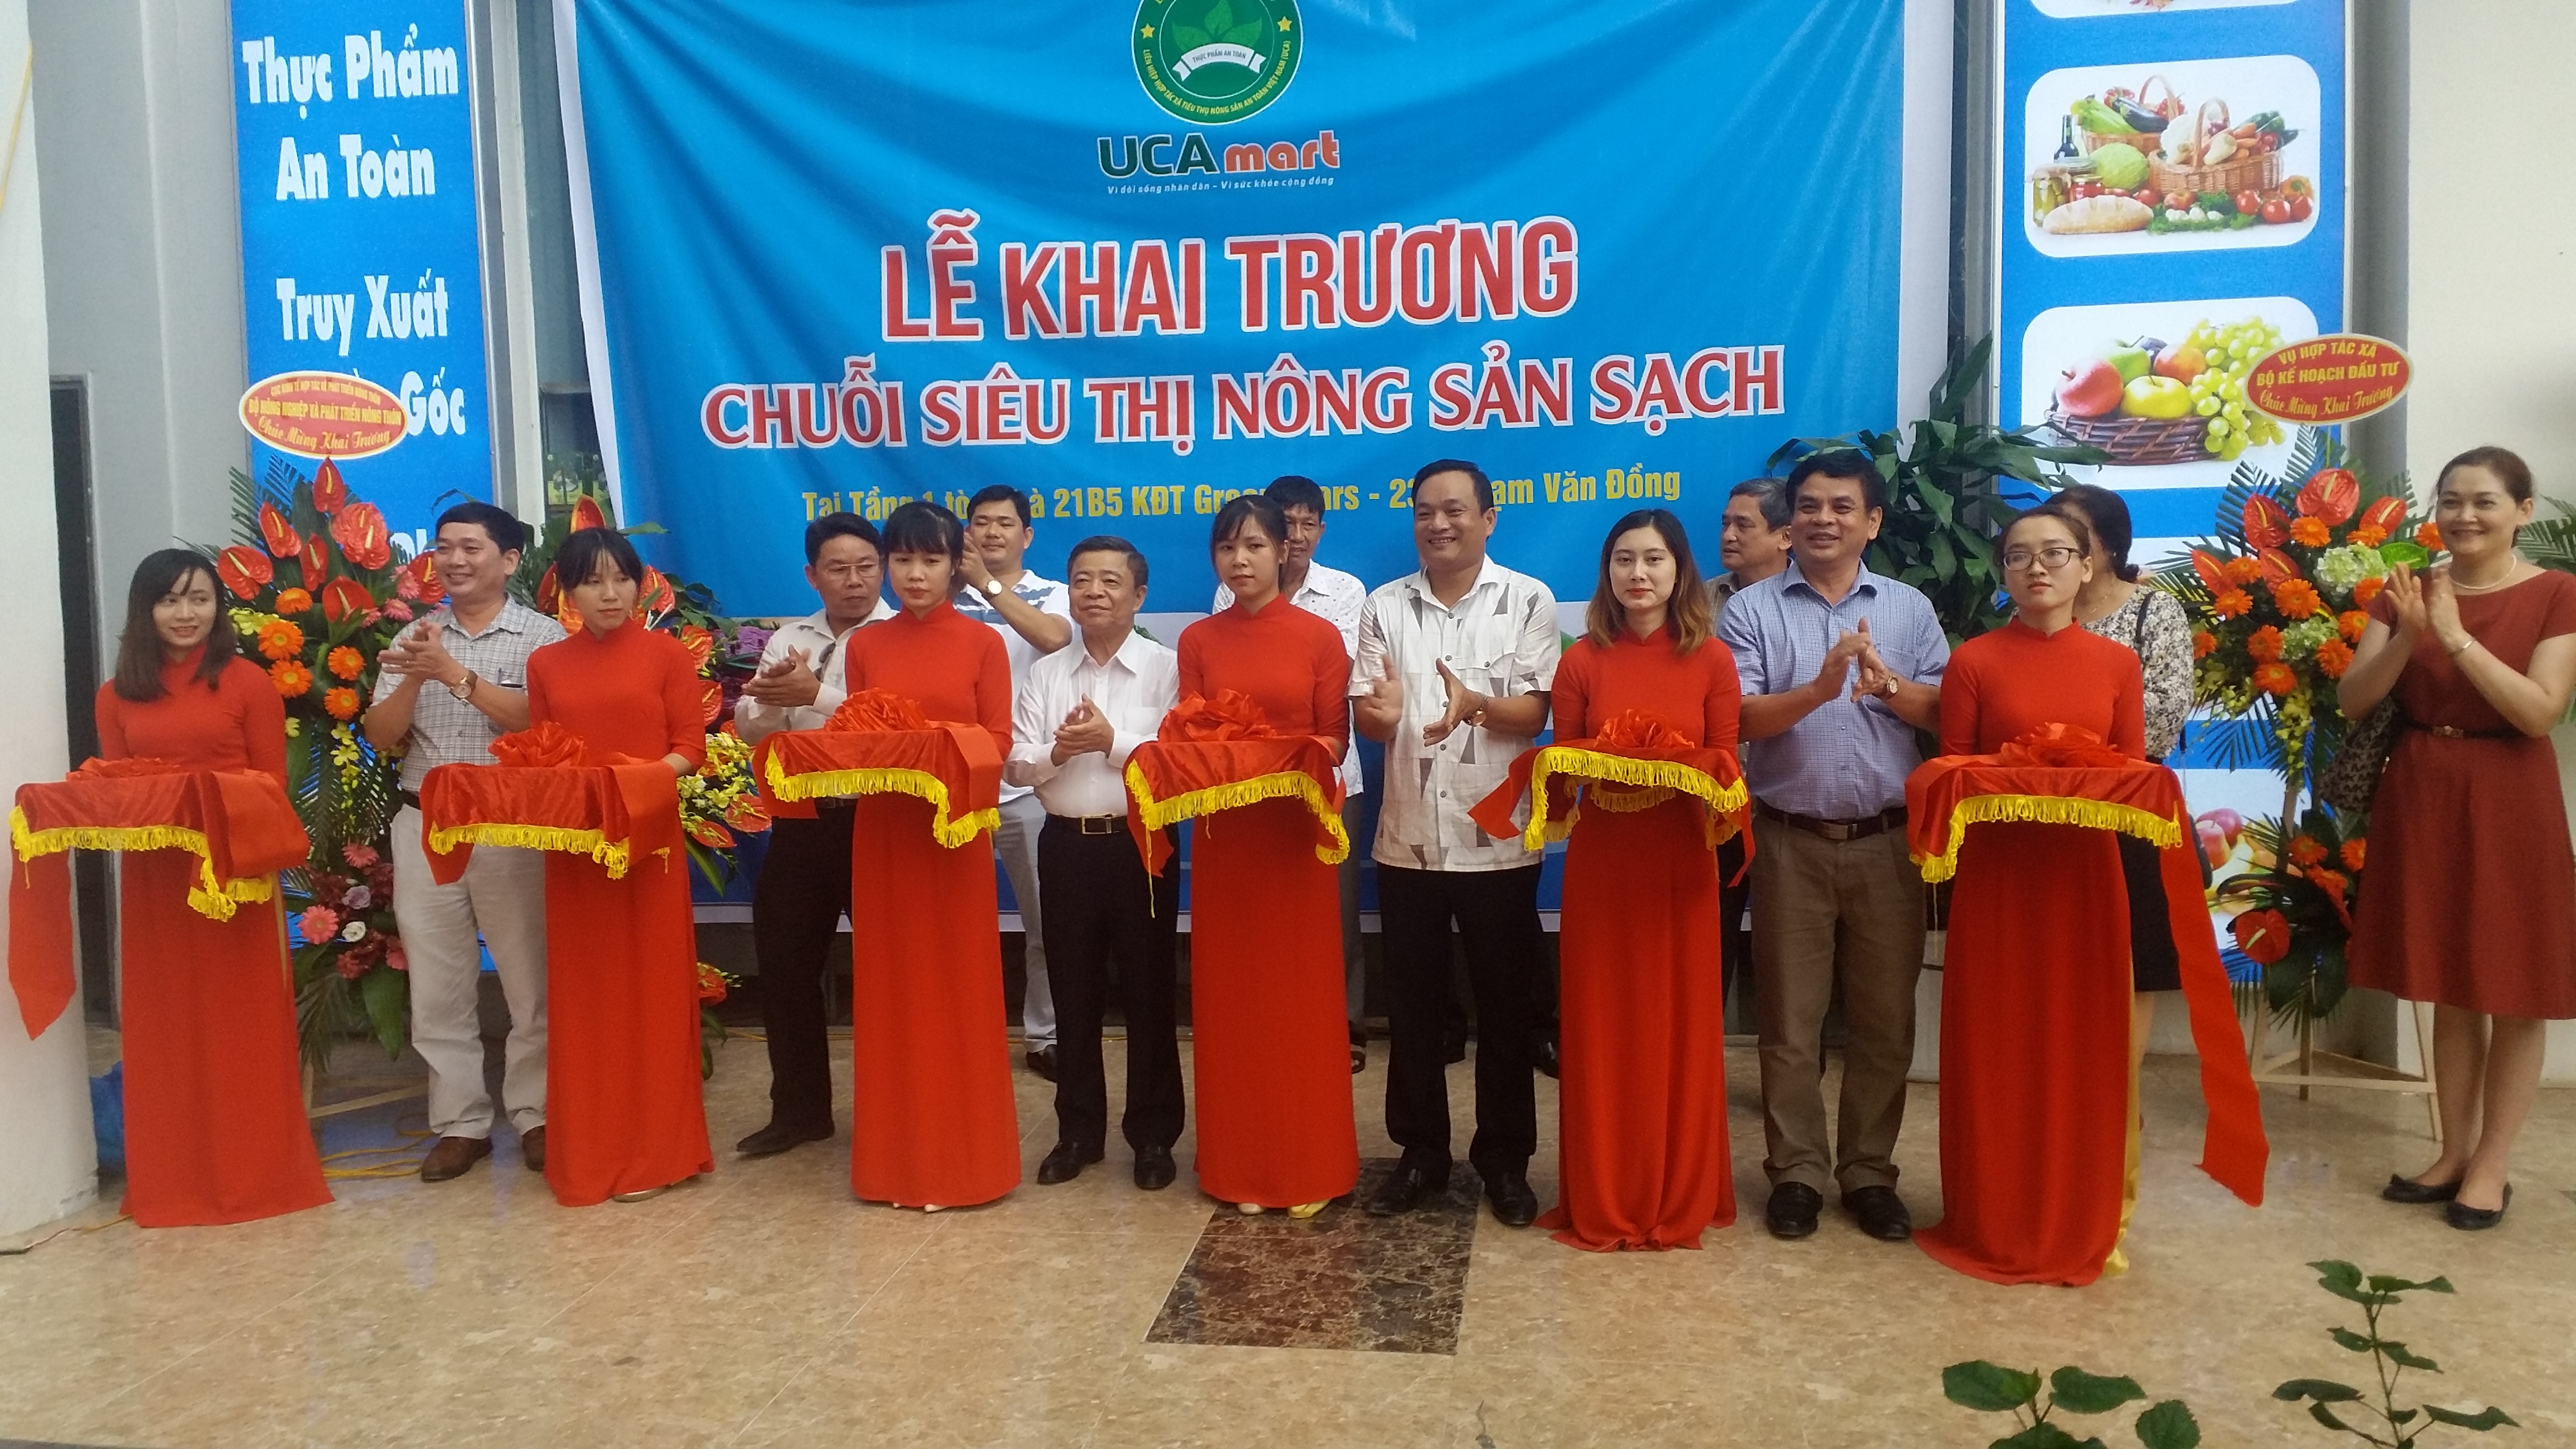 UCA mở thêm cửa hàng nông sản sạch thứ 8 tại Hà Nội